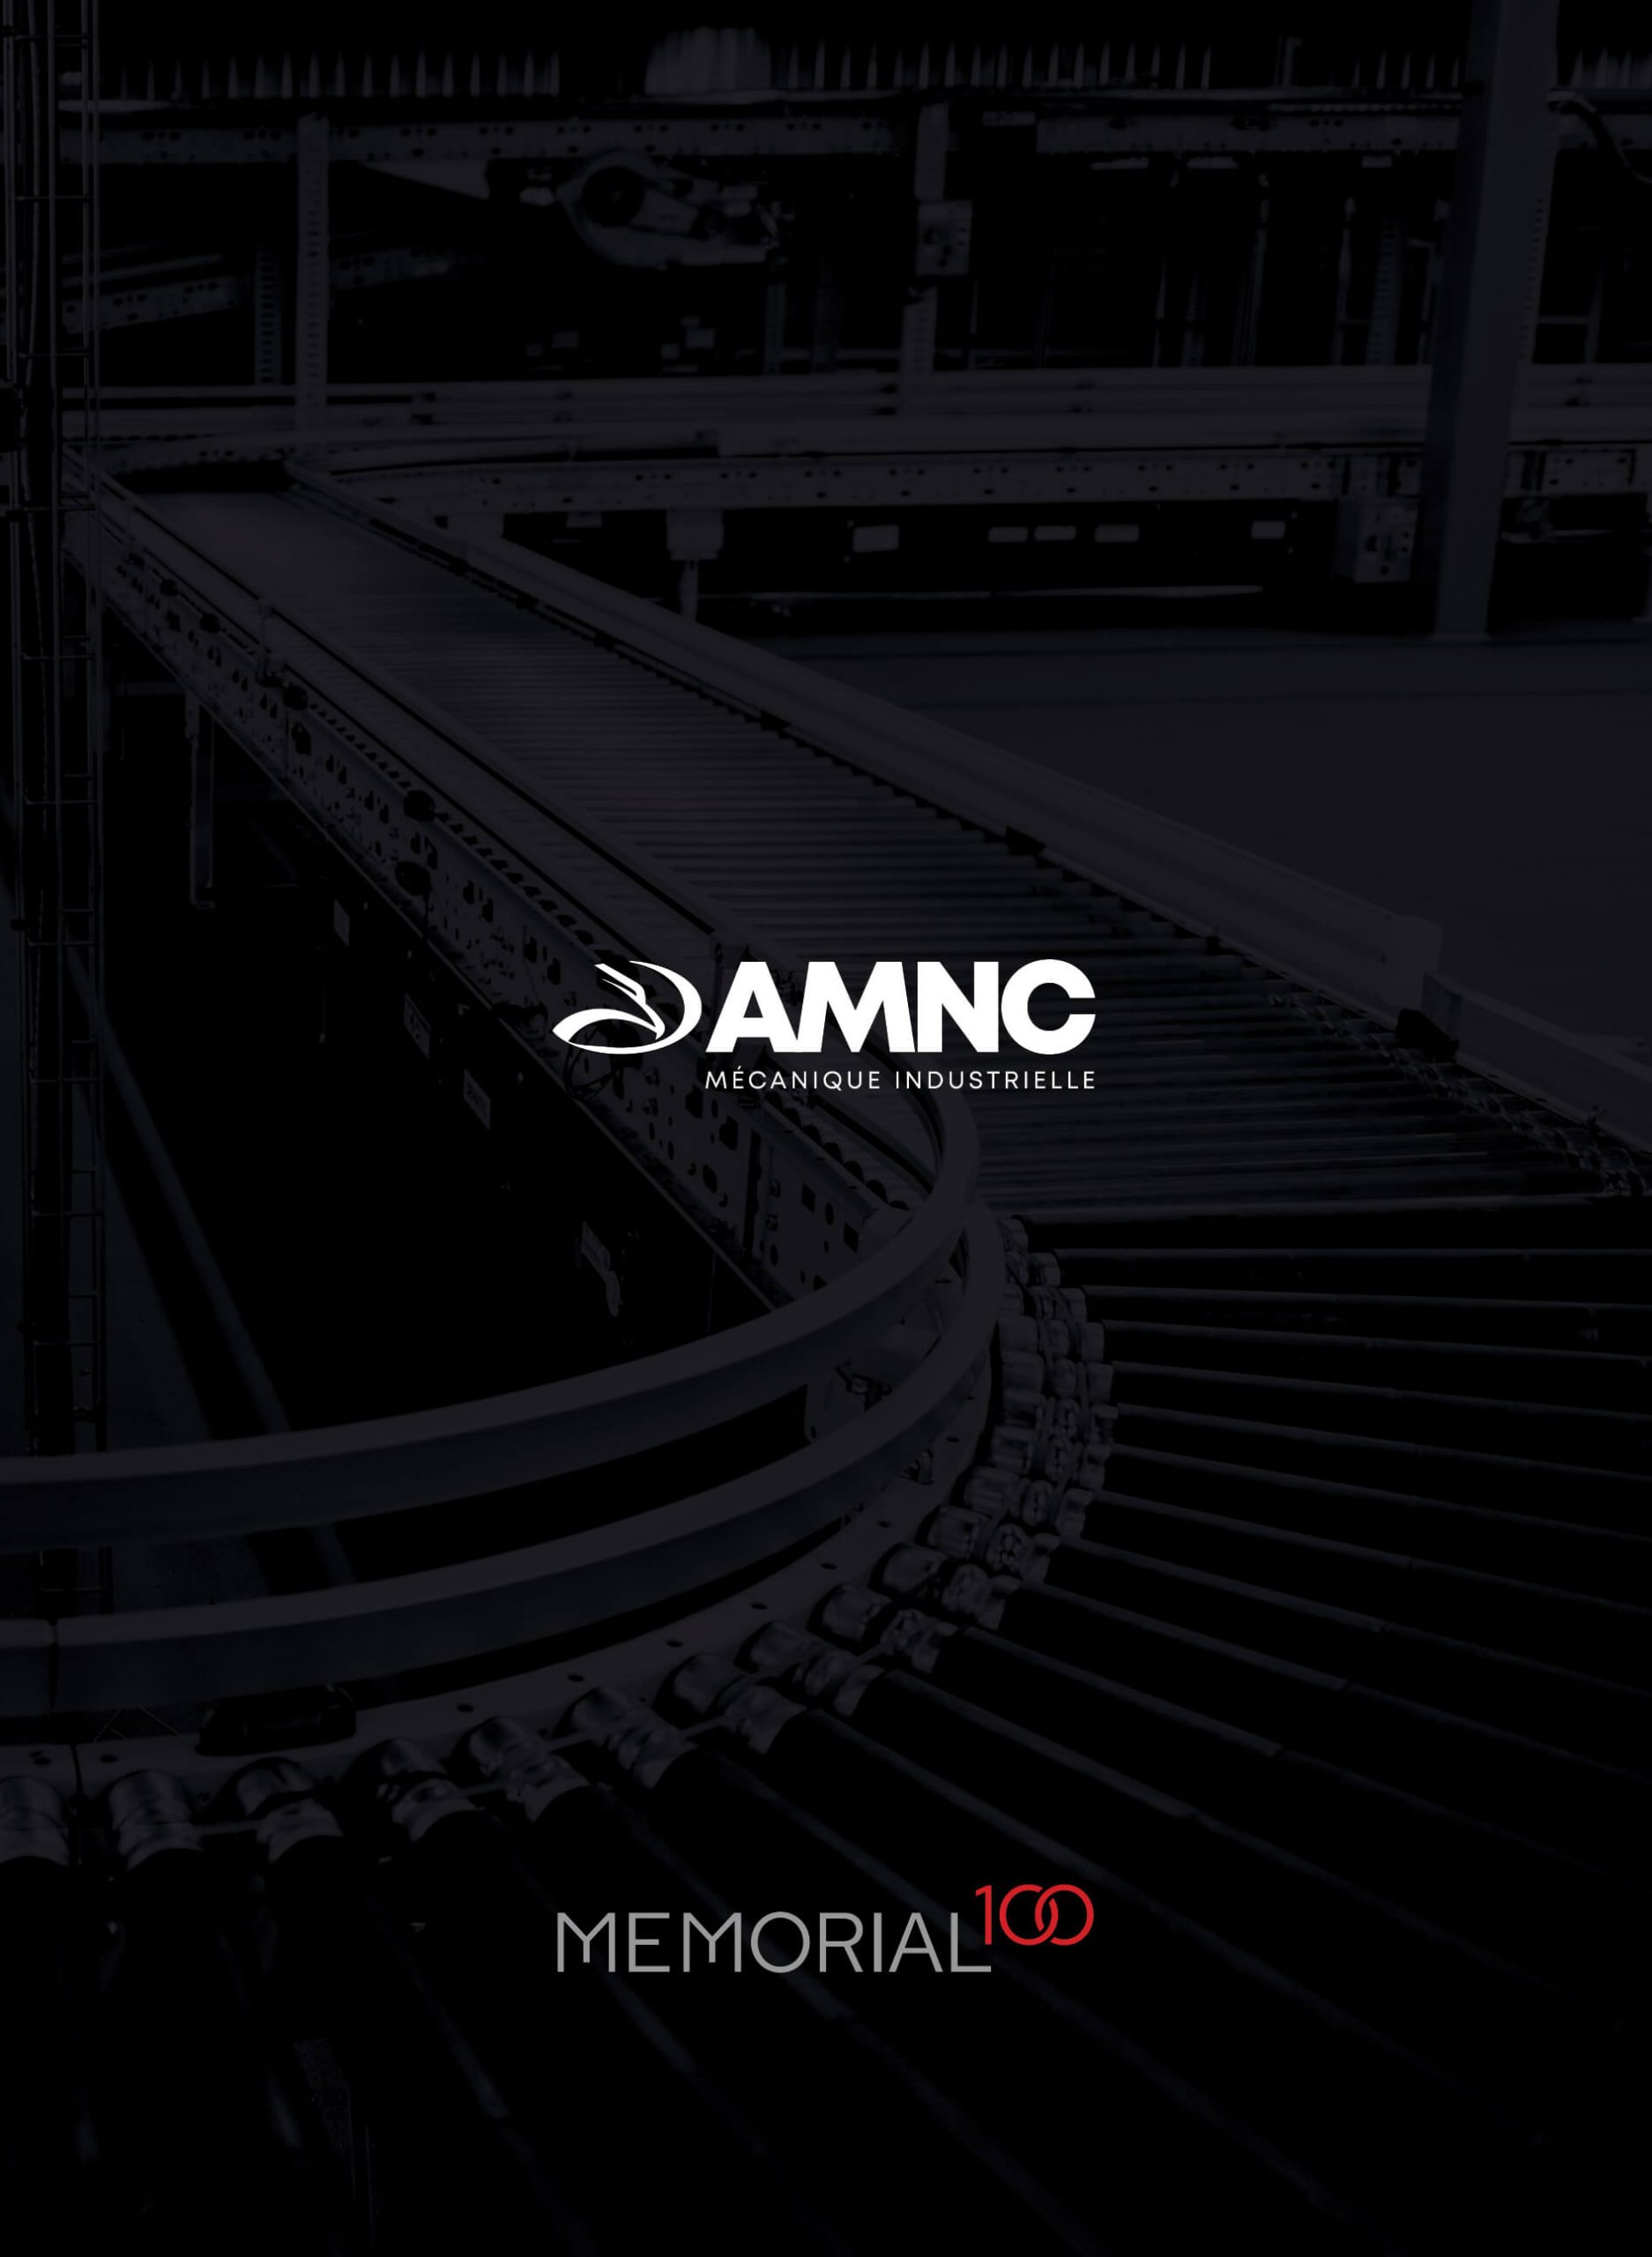 Mécanique industrielle AMNC | Récit